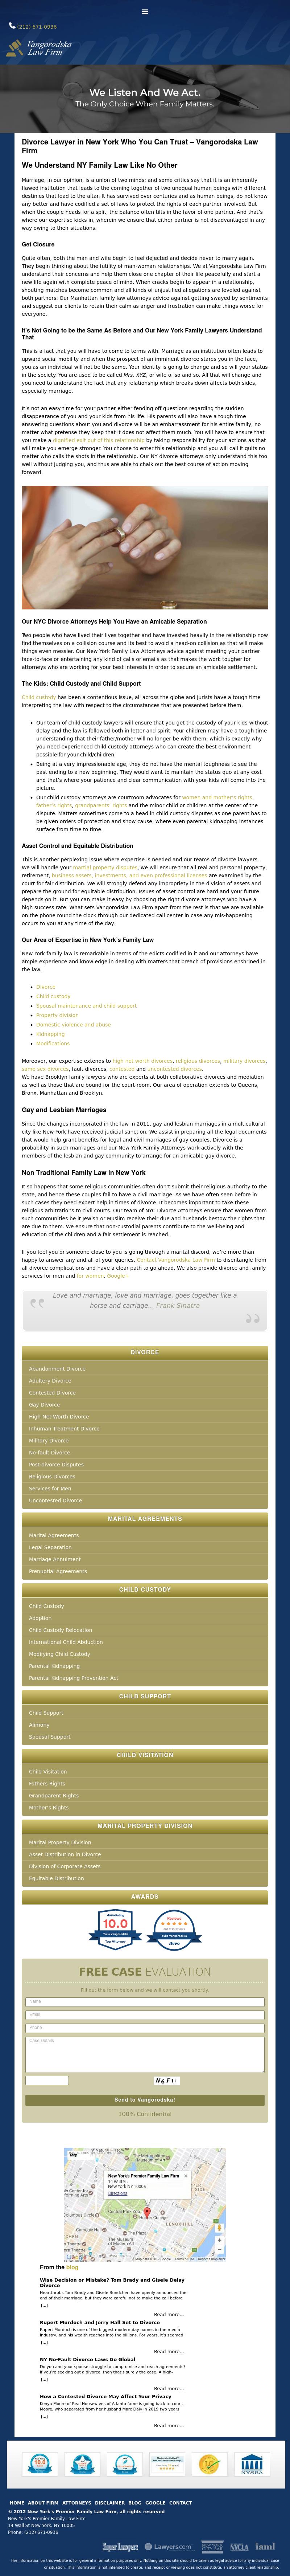 Provda Law Firm - Brooklyn NY Lawyers